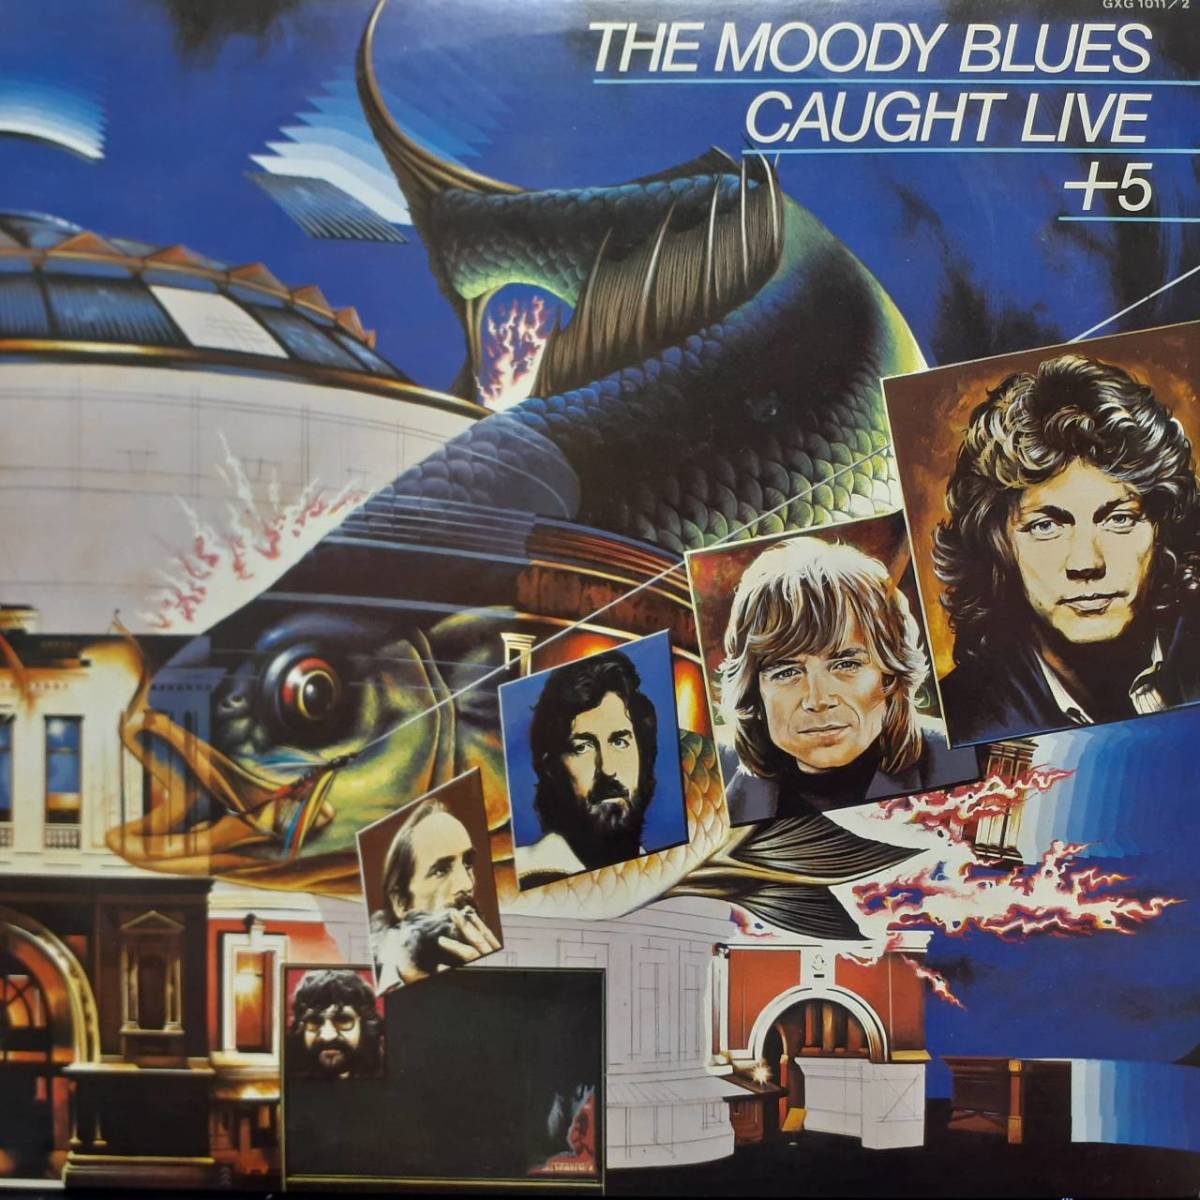 PROMO日本オリジ2LP 見本盤 白ラベル Moody Blues / Caught Live+5 1977年 London GXG-1011/2 ムーディー・ブルース ライヴ・トラックスの画像2